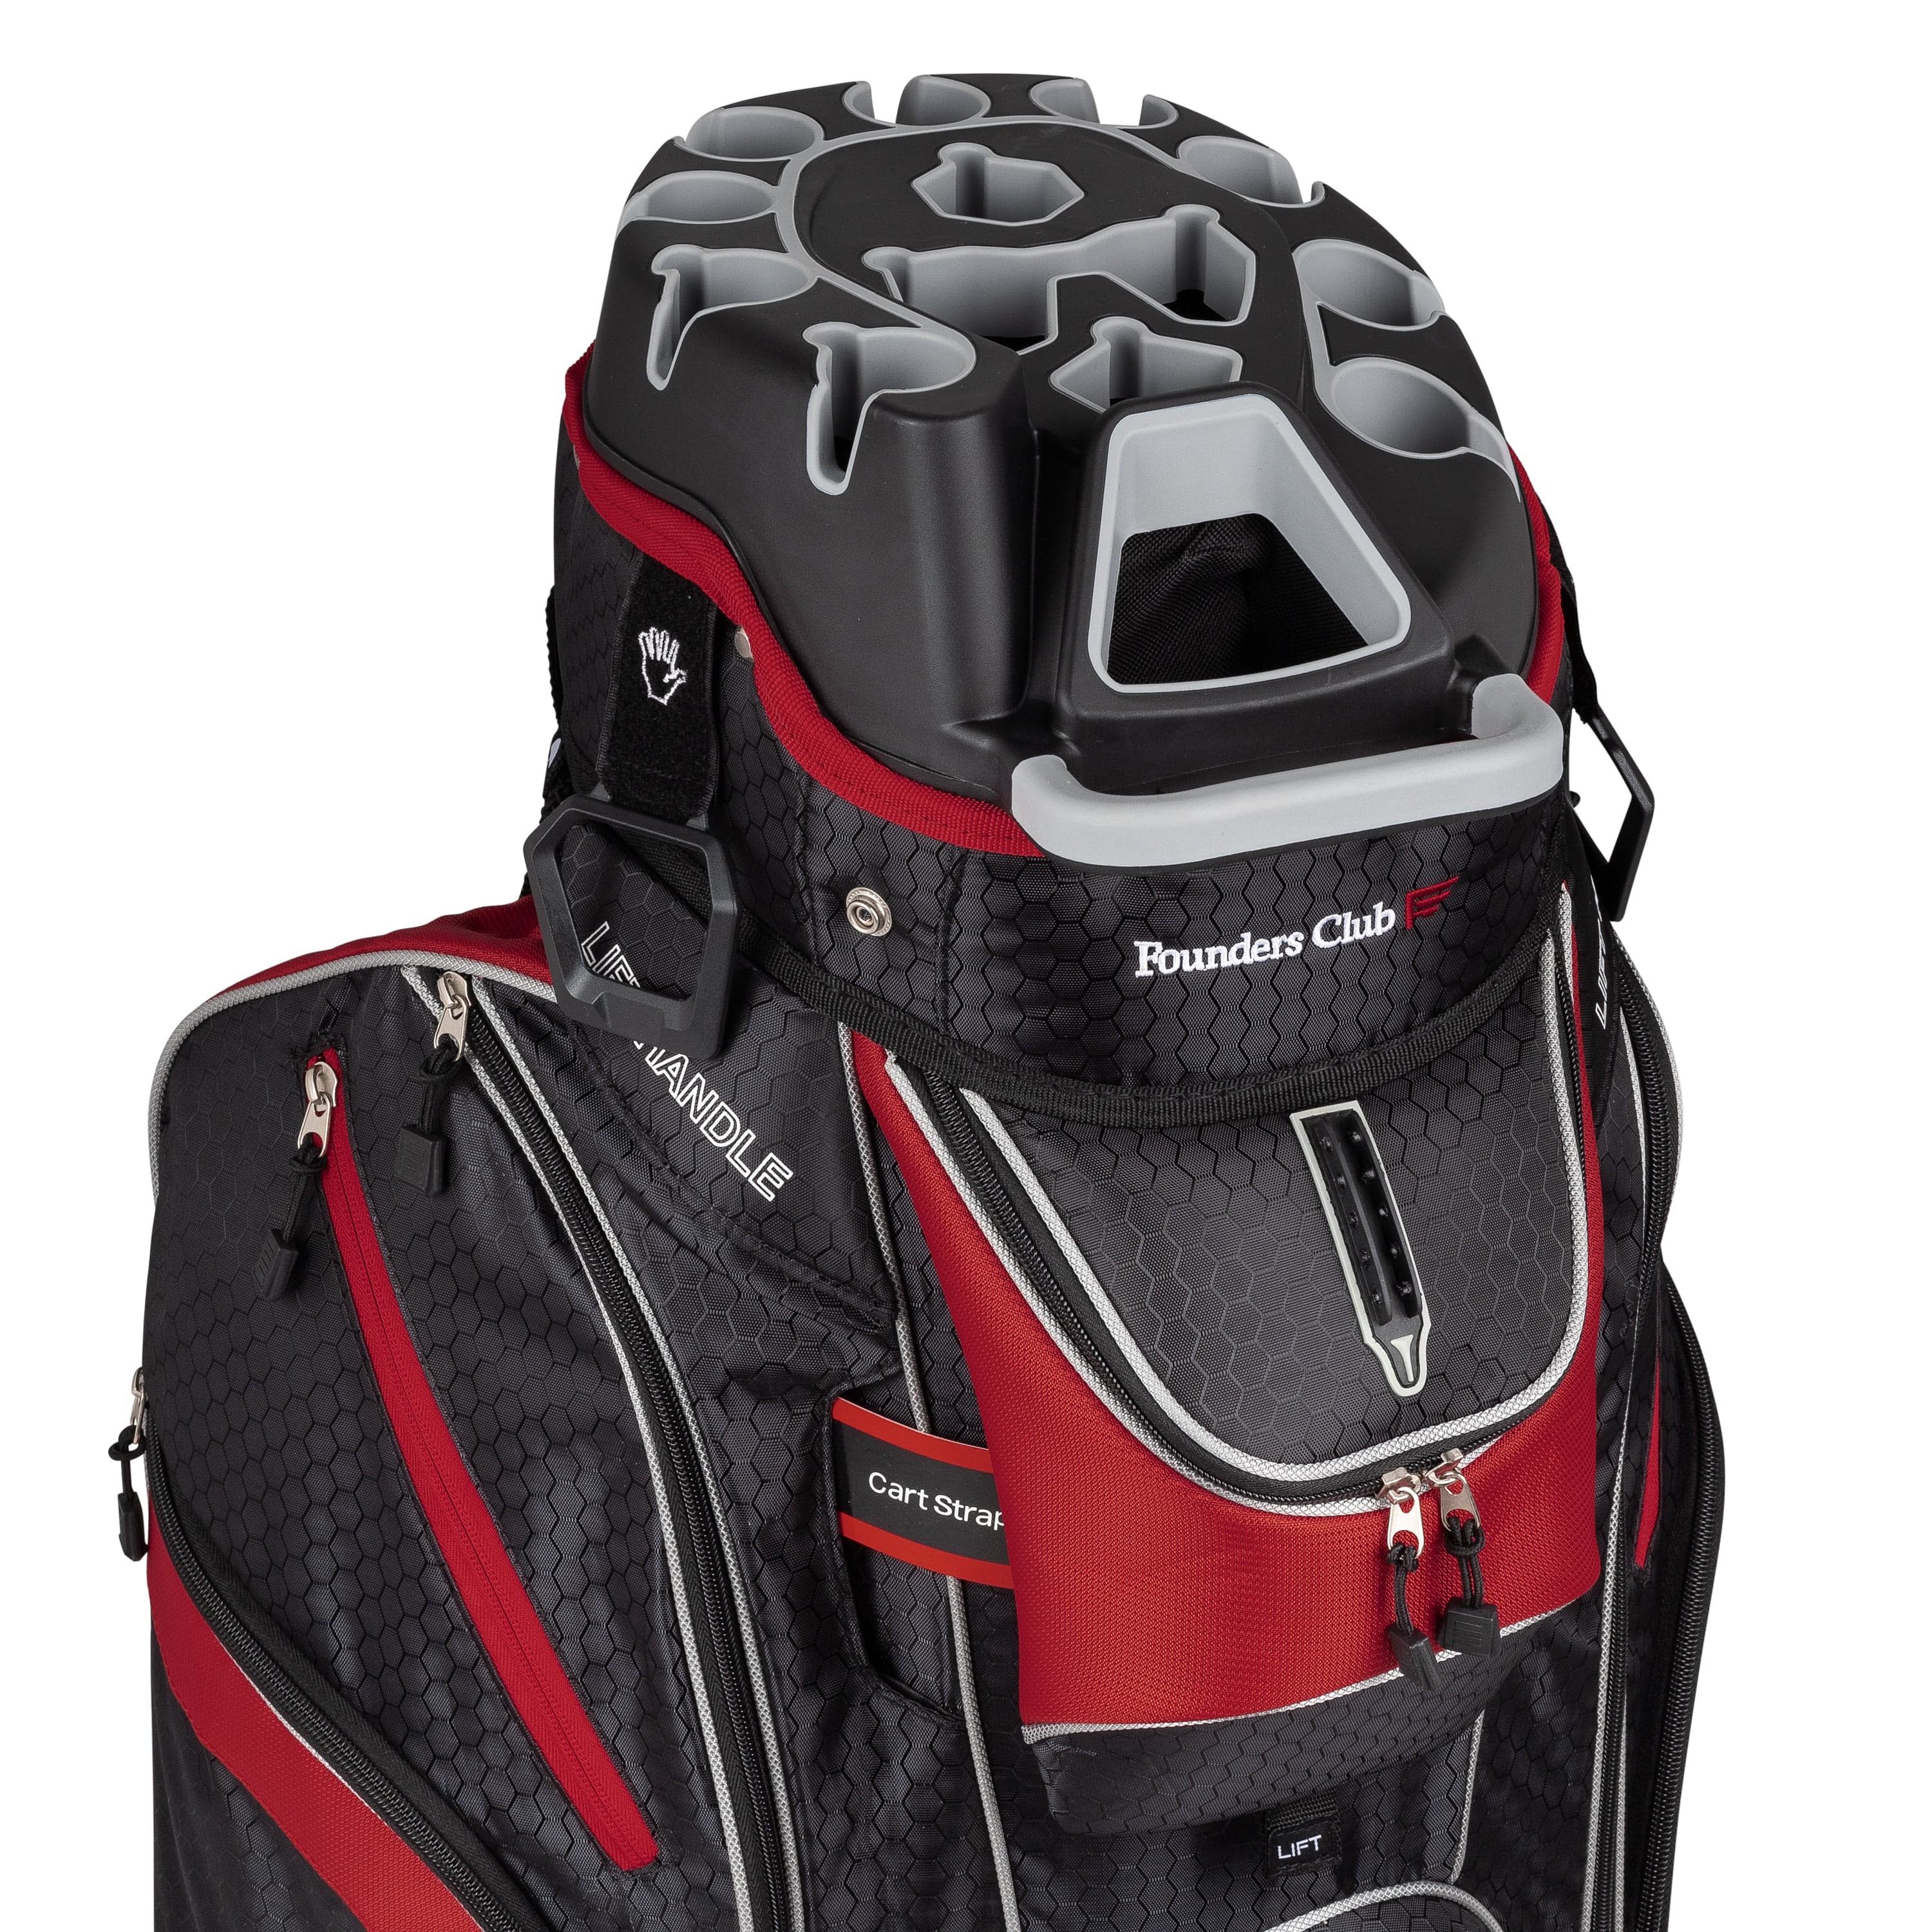 Founders Club 3rd Generation Premium Organizer 14 Way Golf Cart Bag -